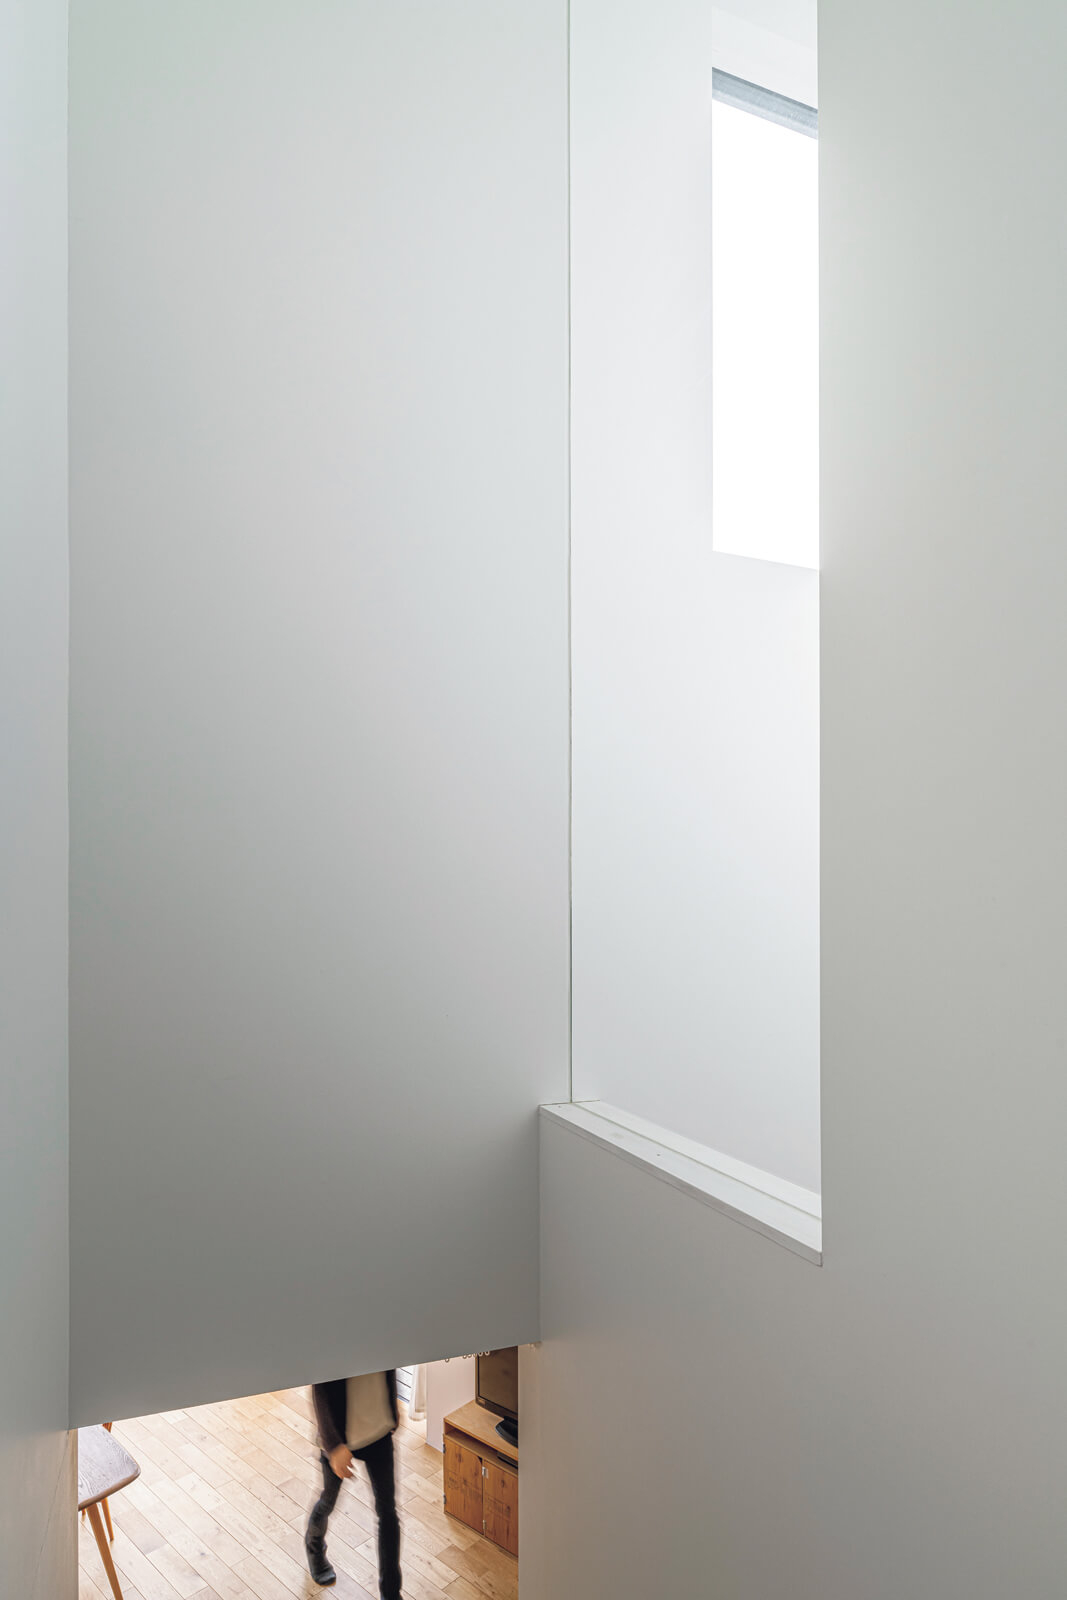 玄関の上部の大きな窓から射し込む外光が、ガラスの間仕切り壁を介して、窓がない廊下や階段まわりを明るく照らす